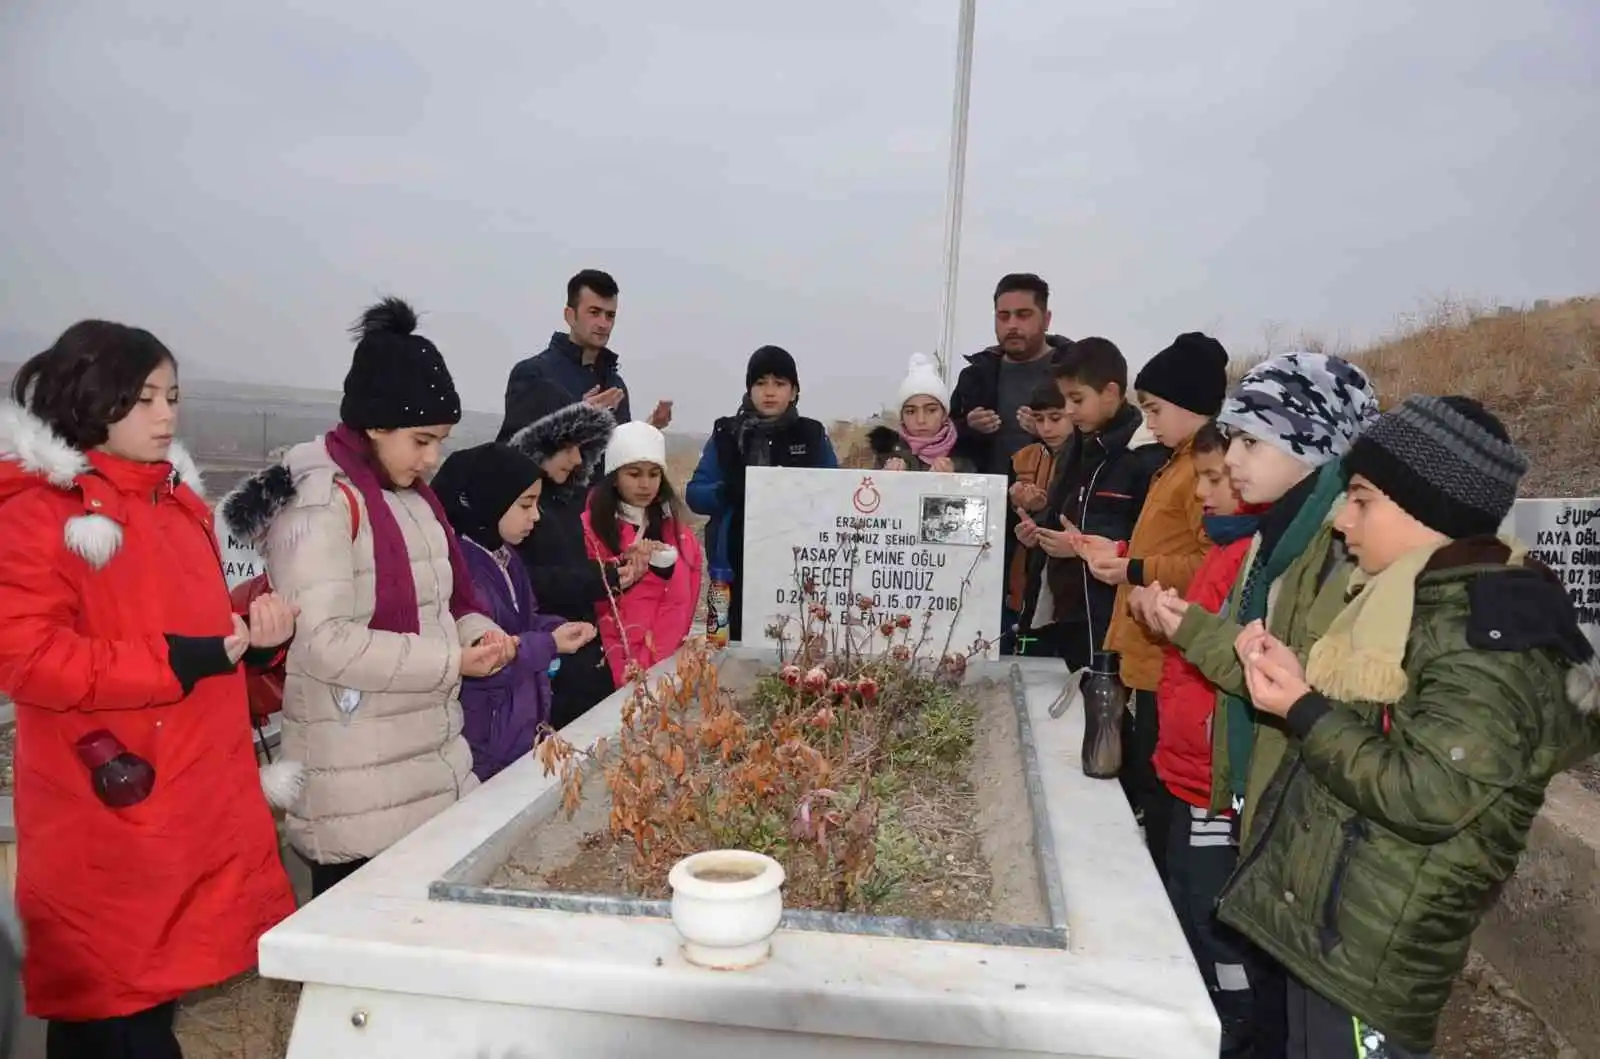 Öğrencilerden 15 Temmuz şehidi Gündüz'ün mezarına ziyaret
